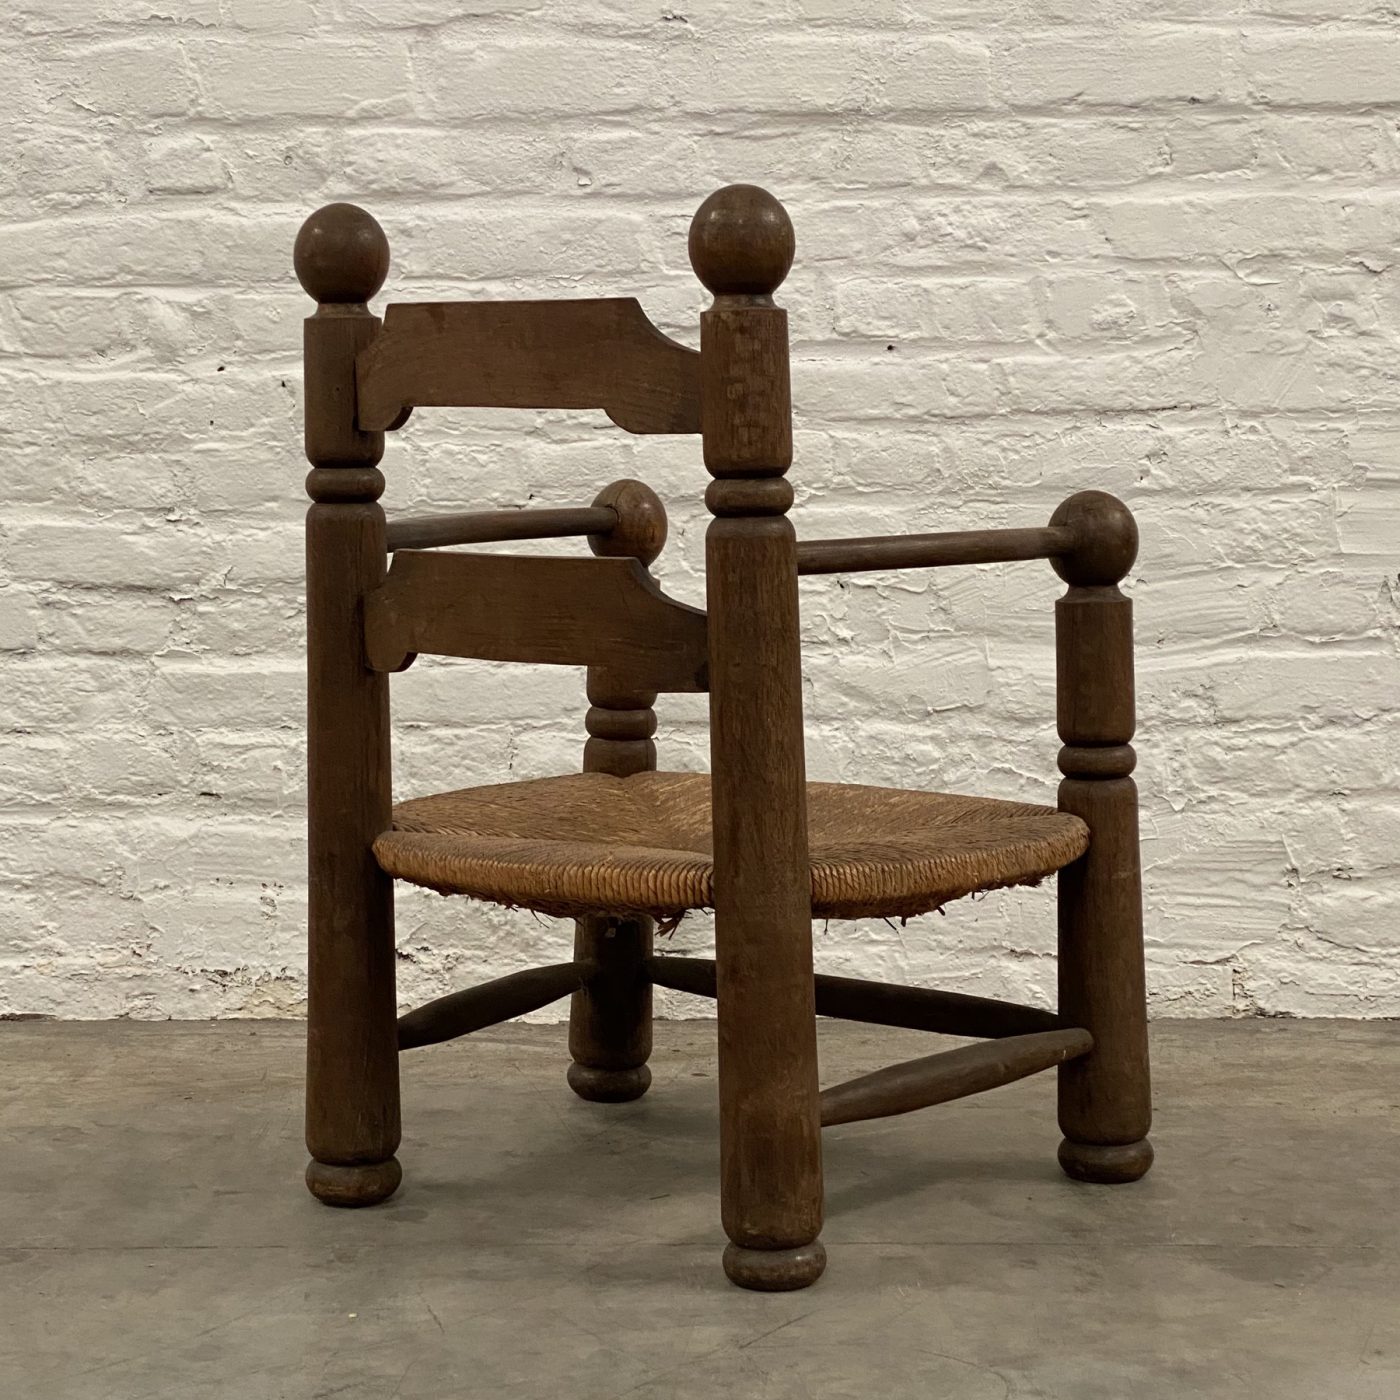 objet-vagabond-dudouyt-chairs0006